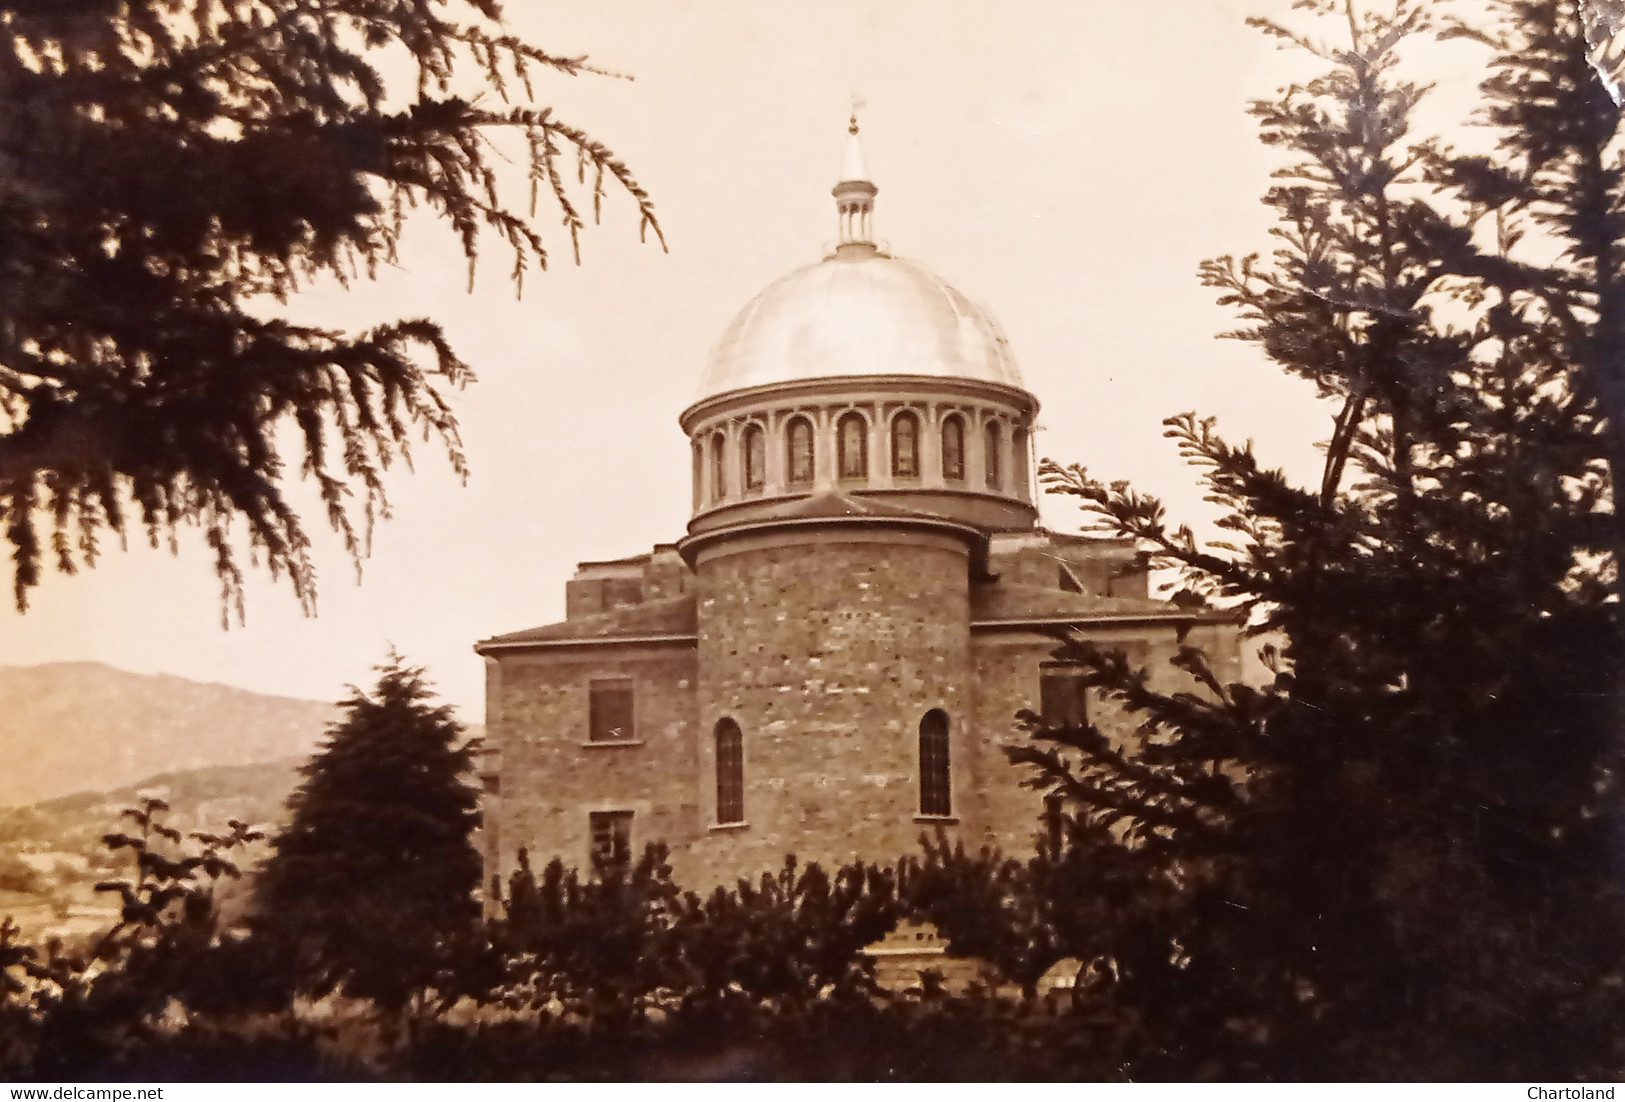 Cartolina - Bedonia - Santuario Della Madonna Di S. Marco - 1955 - Parma